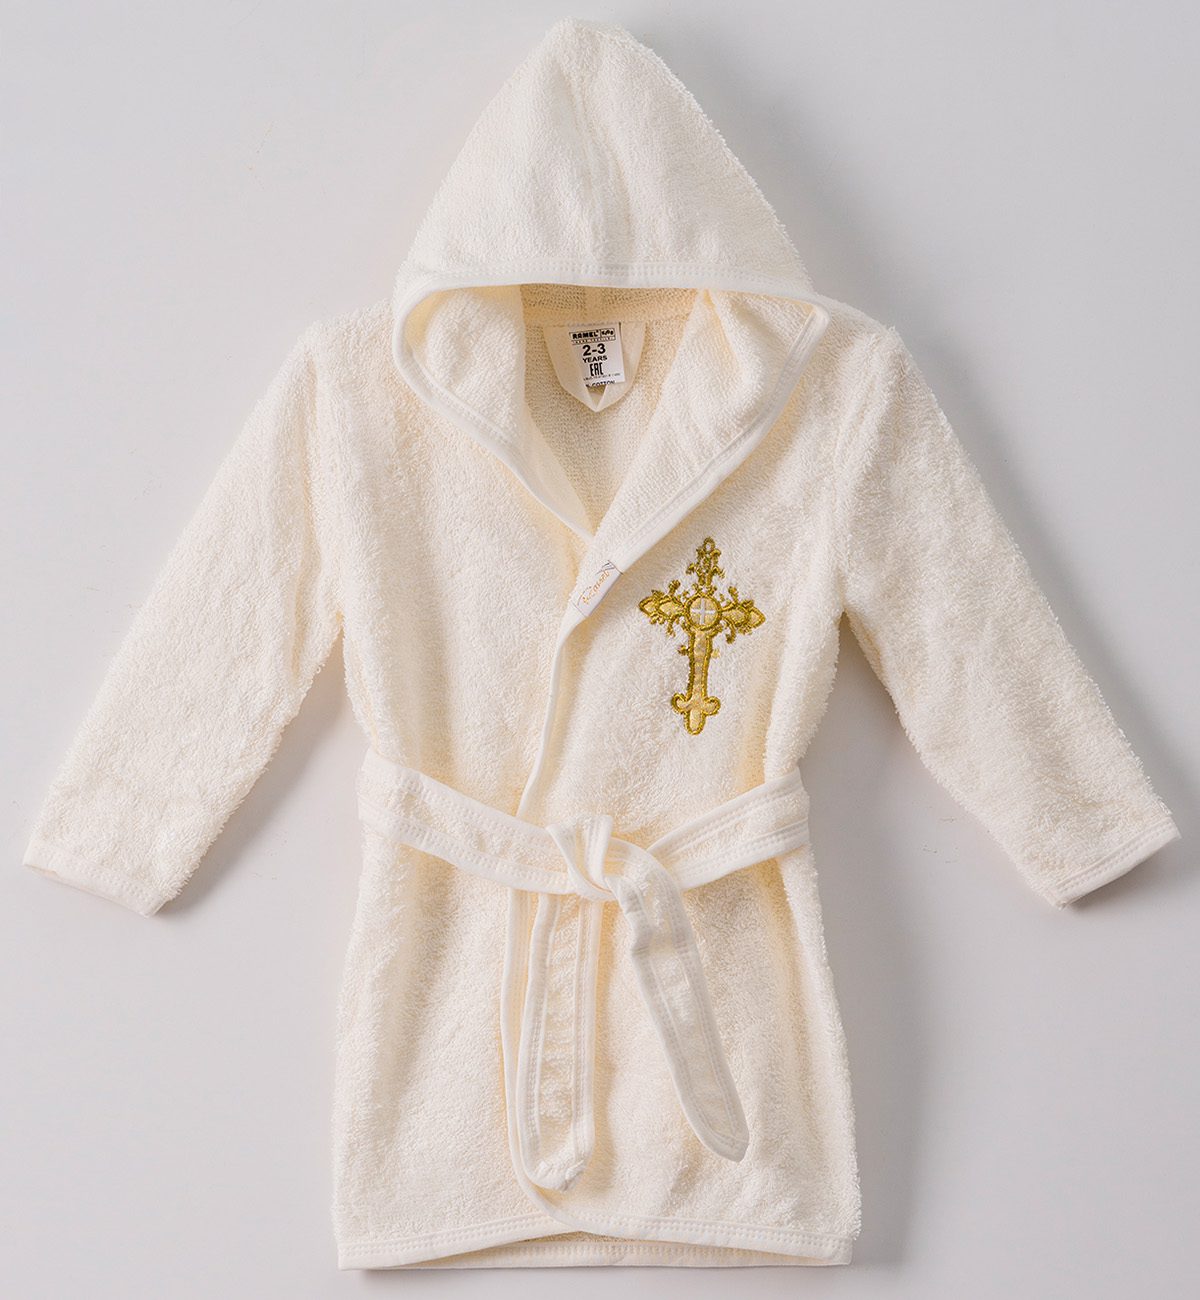 Unisex Baby Baptism Hooded Bathrobe / 1-2Y | 2-3Y | 3-4Y - Kids Fashion Turkey